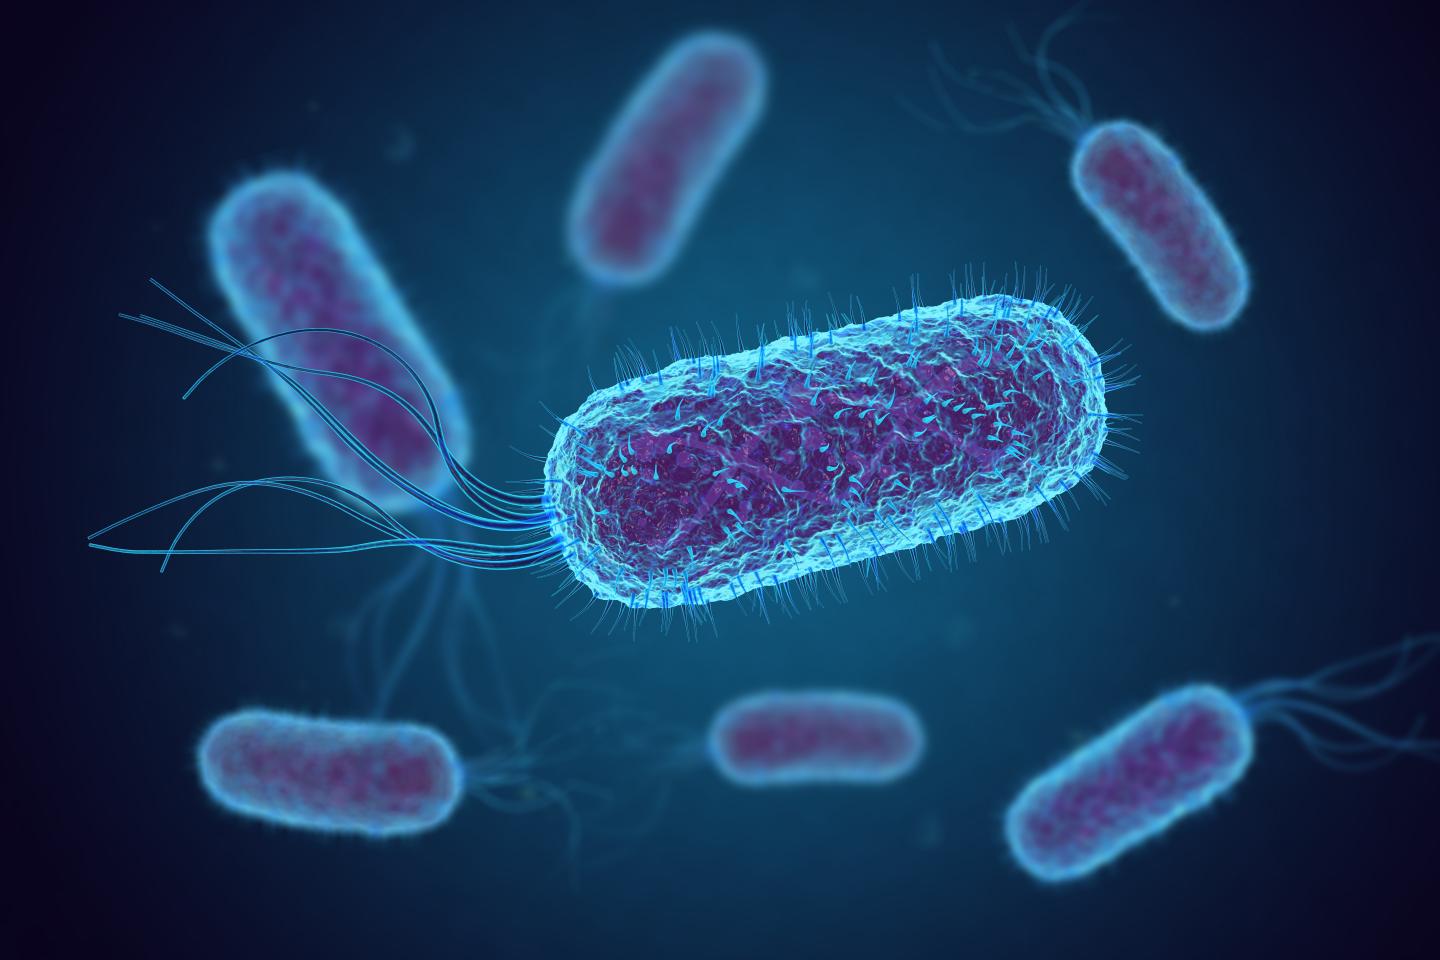 Escherichia coli (E. coli) bacteria